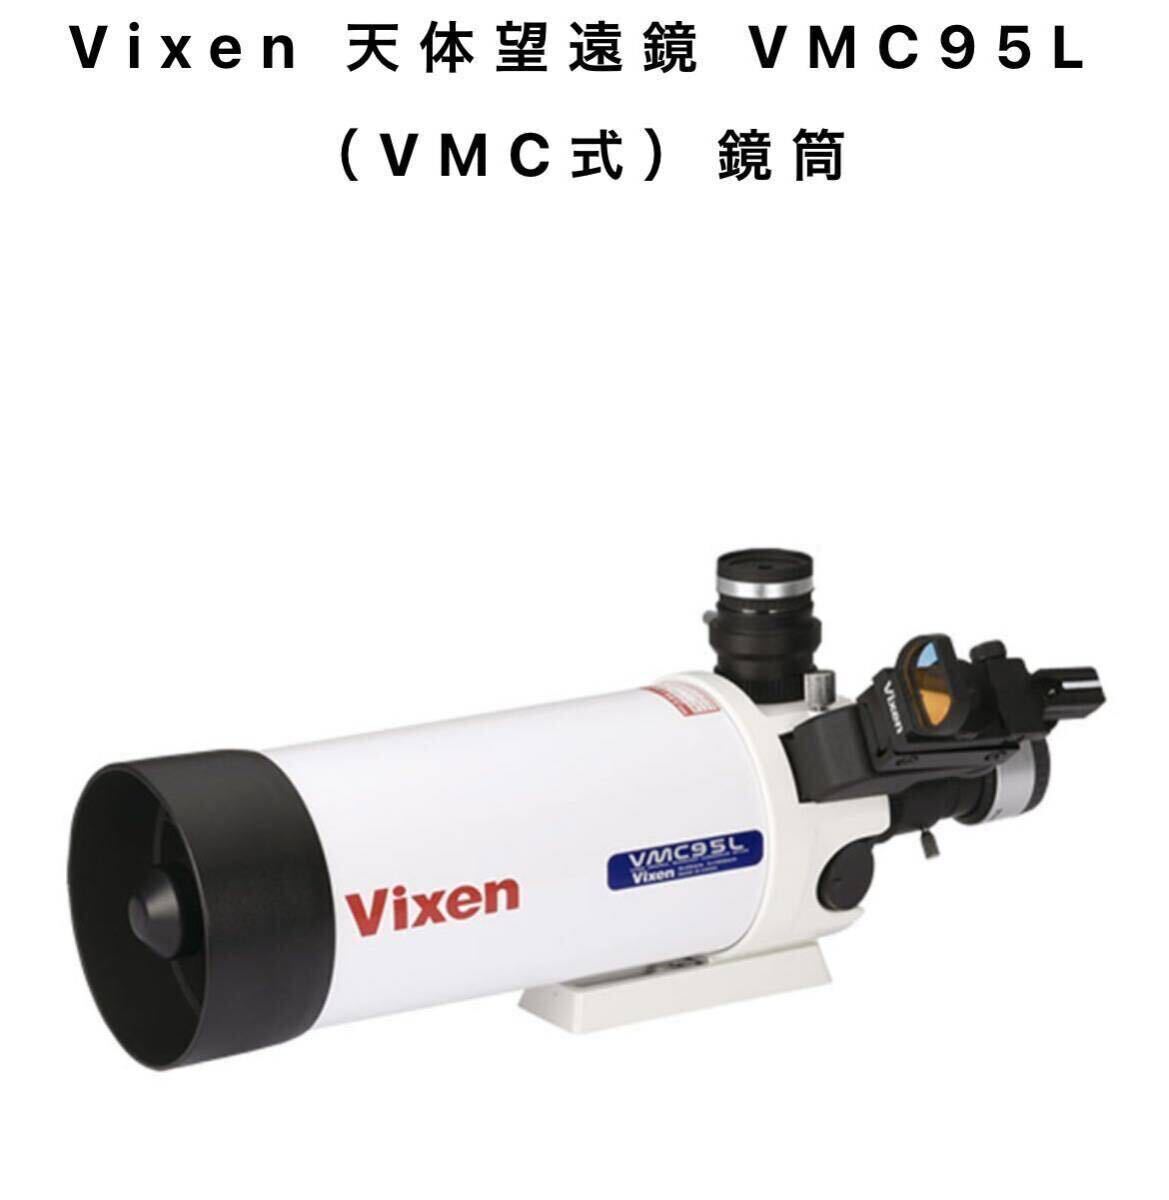 【完動品、元箱保証書など完備】Vixen ビクセン vmc95L 天体望遠鏡 鏡筒ユニット 三脚 付き 天体観測【2個口発送】の画像2